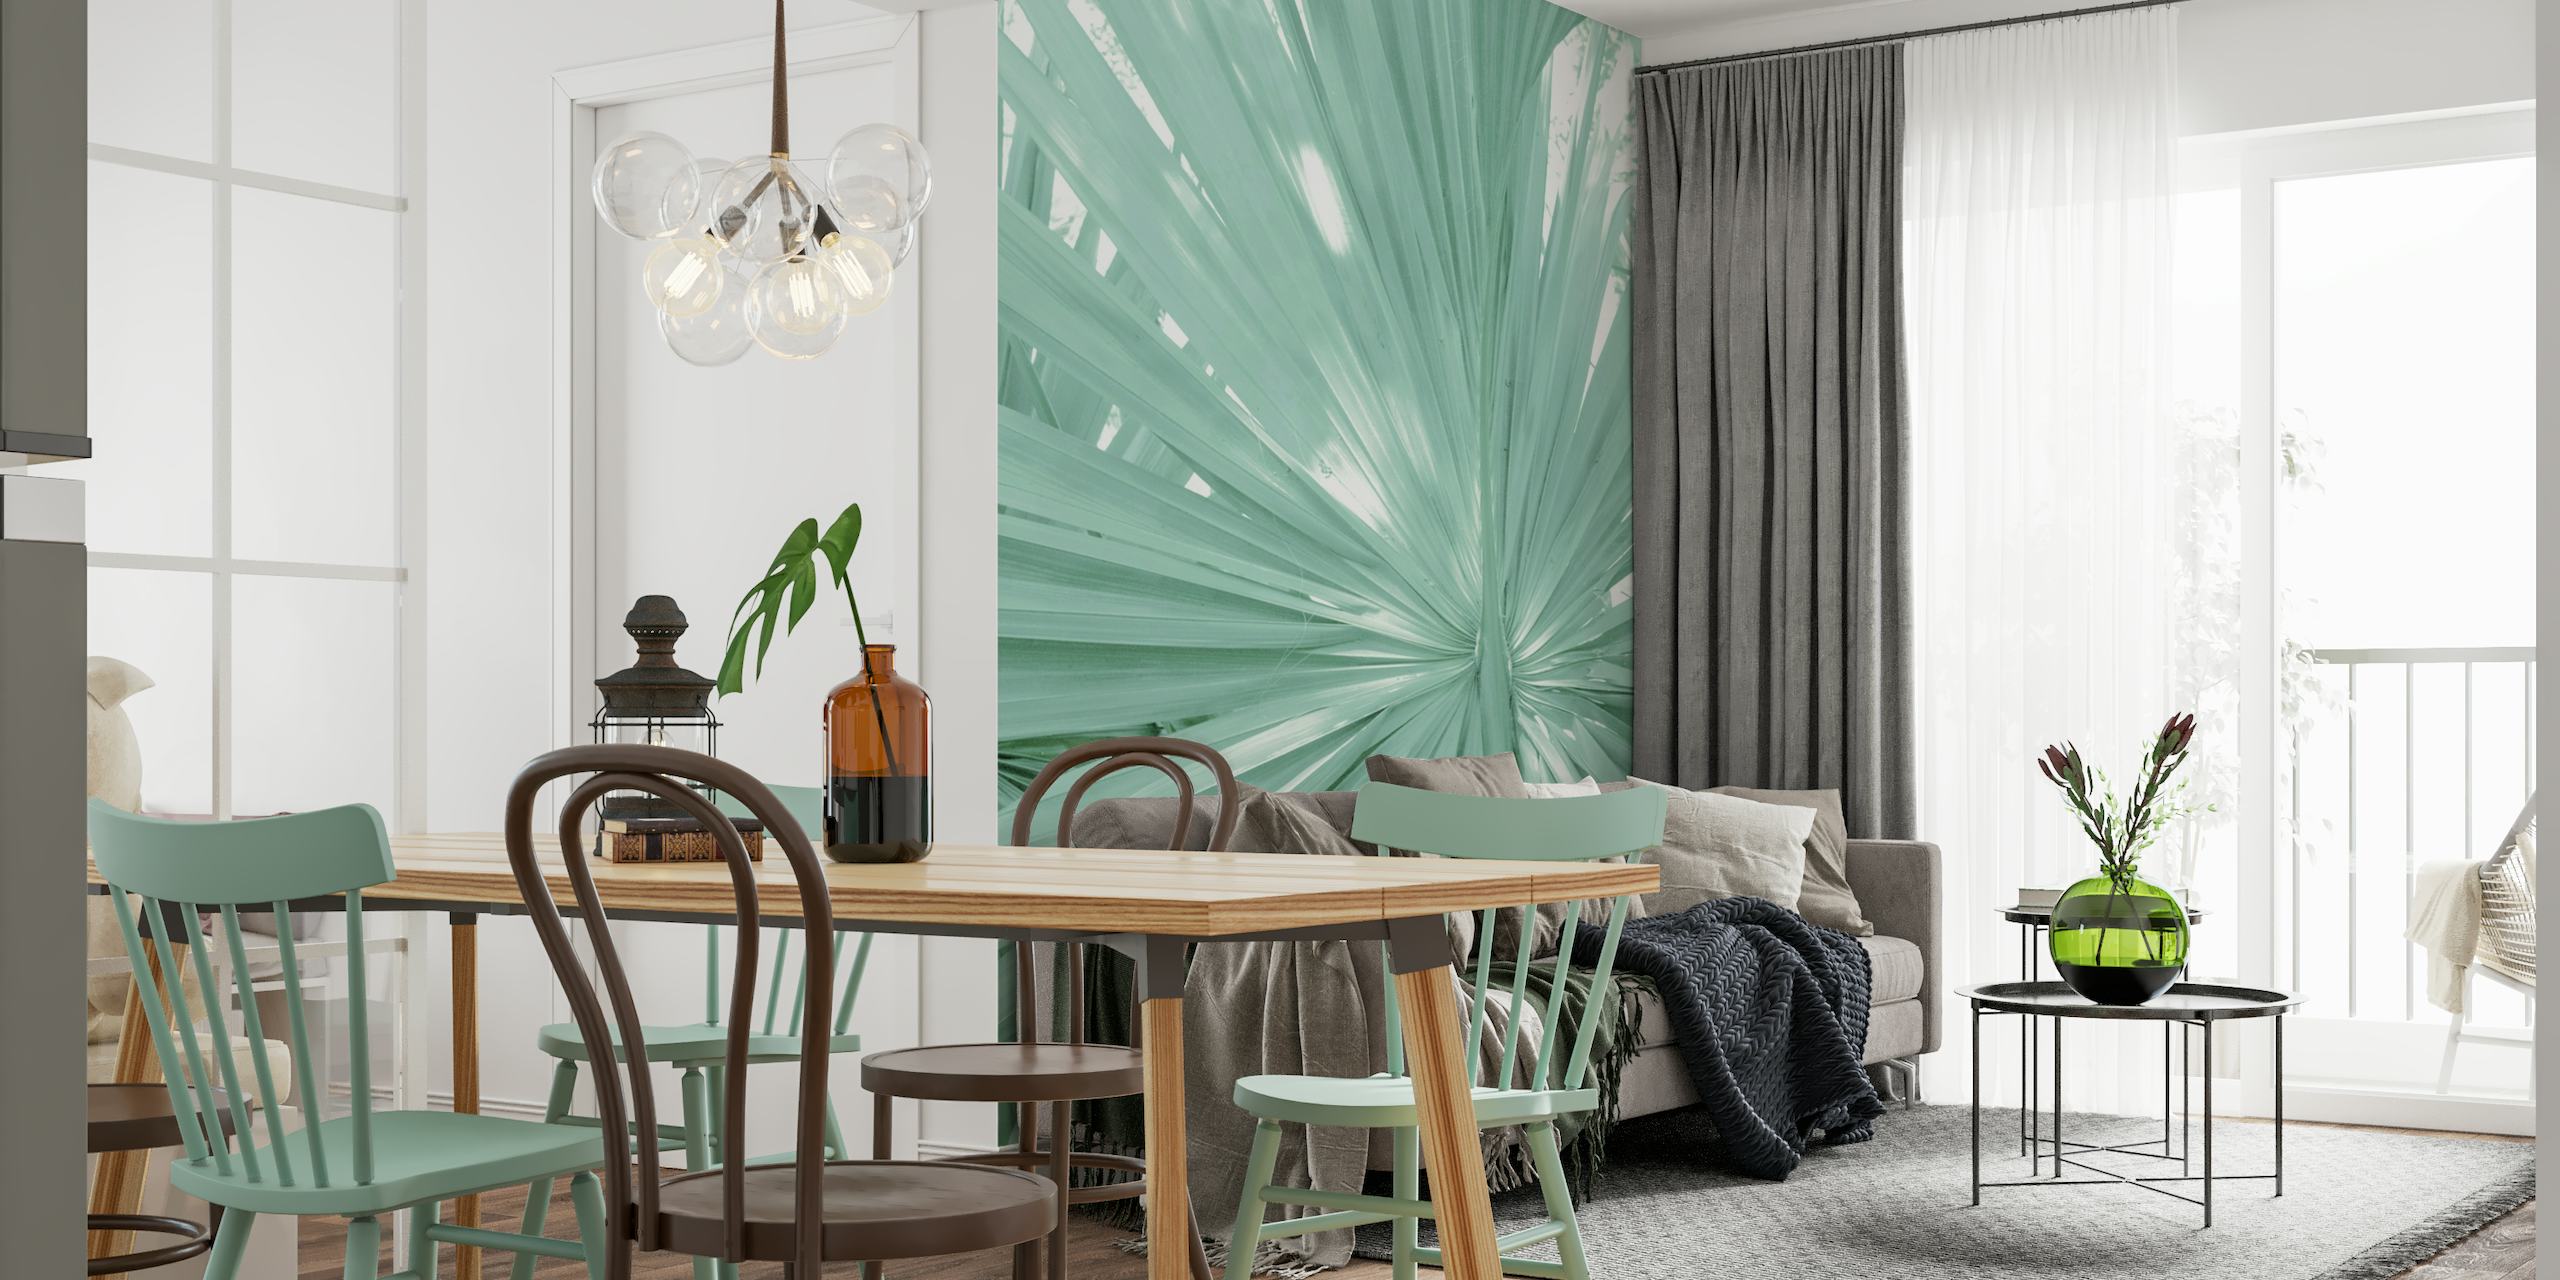 fotomural vinílico de parede com padrão de folha de palmeira em leque tropical para decoração de interiores